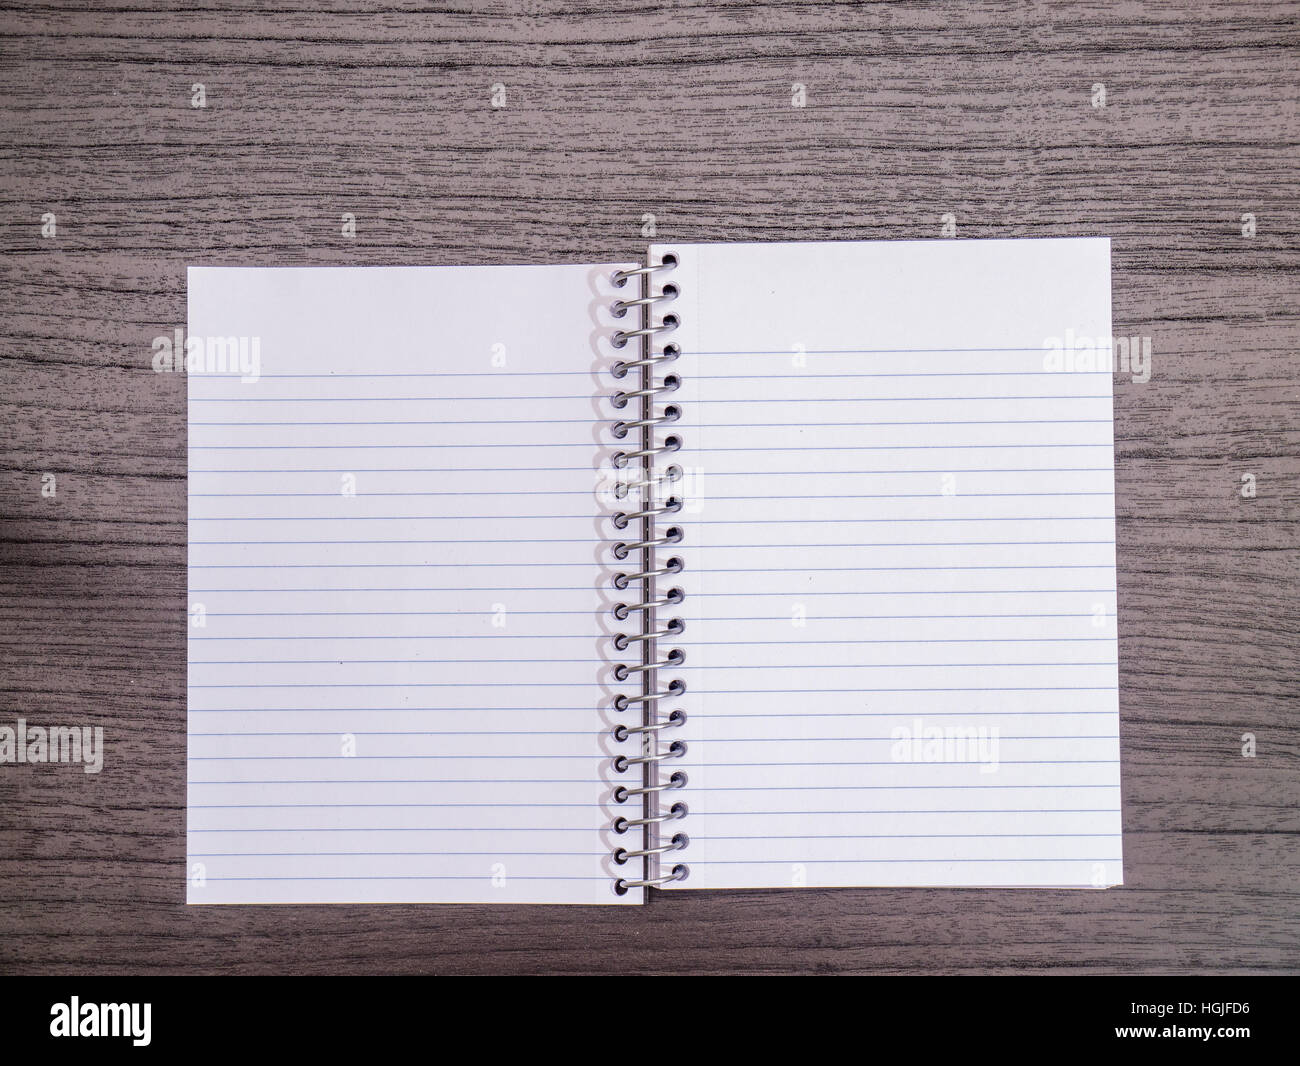 Scrivania di legno scuro, aprire il notebook a spirale Foto Stock